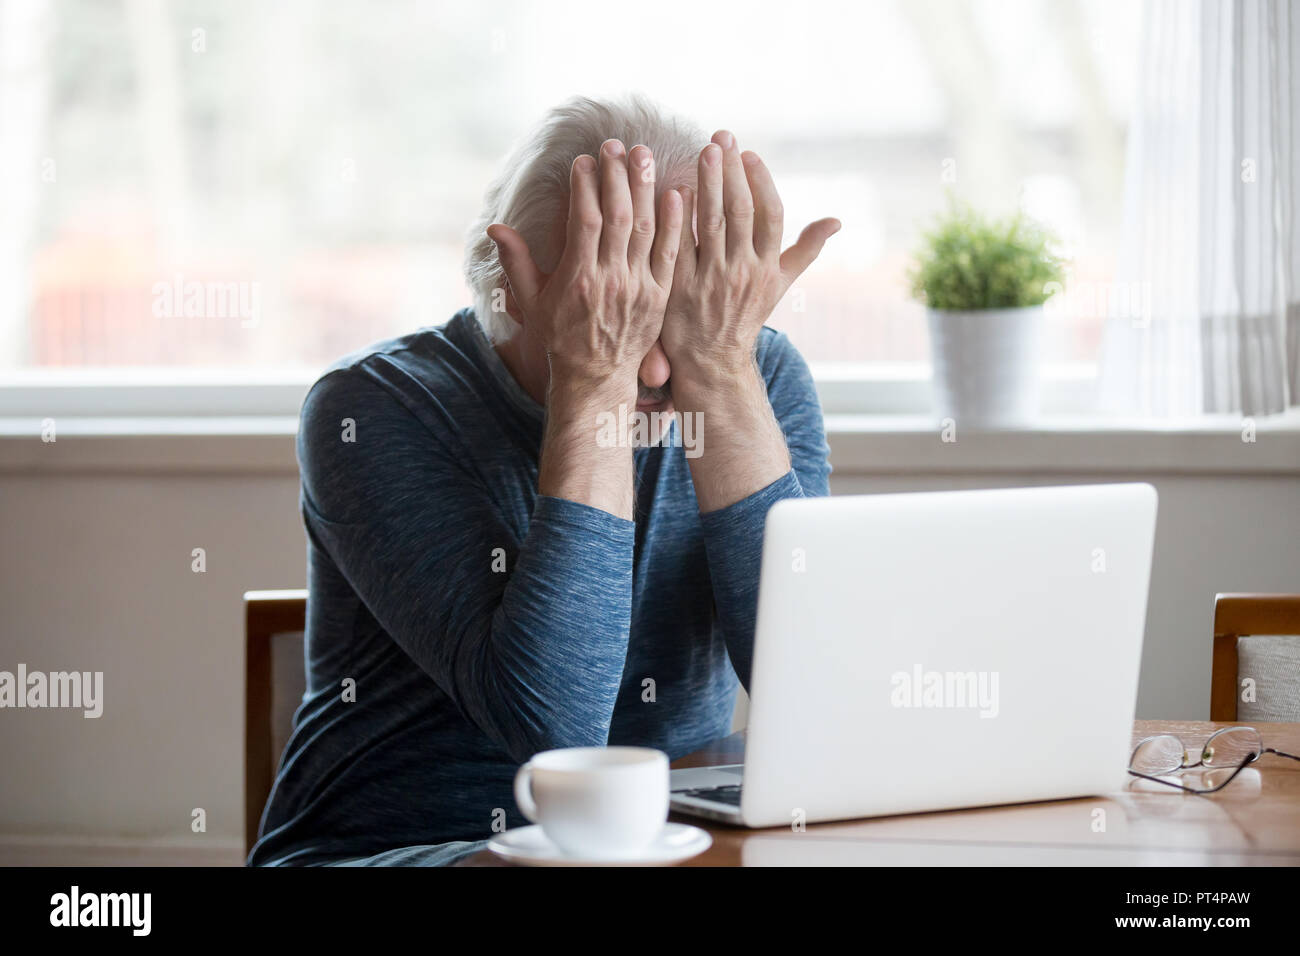 Ermüdet älterer Mann Gefühl von Computer reiben Reizen müde Stockfoto